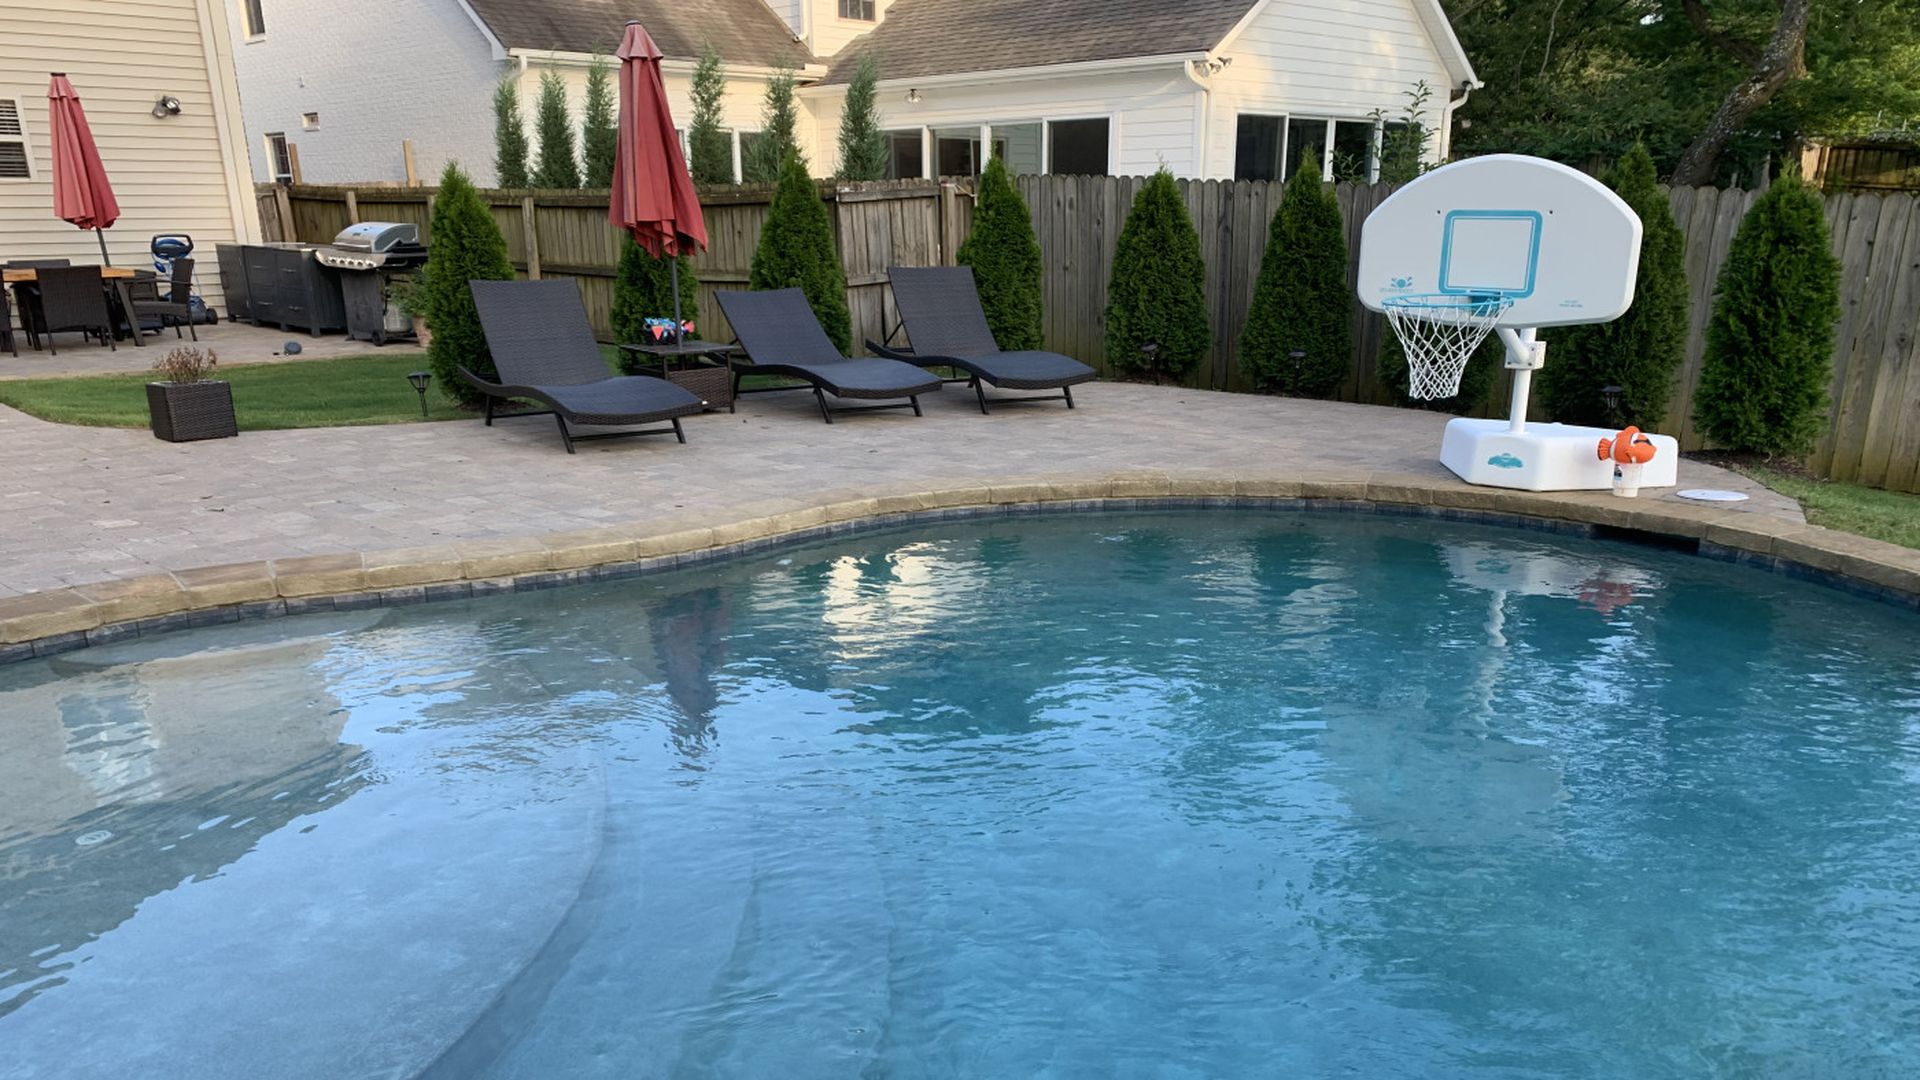 Backyard pool with basketball hoop